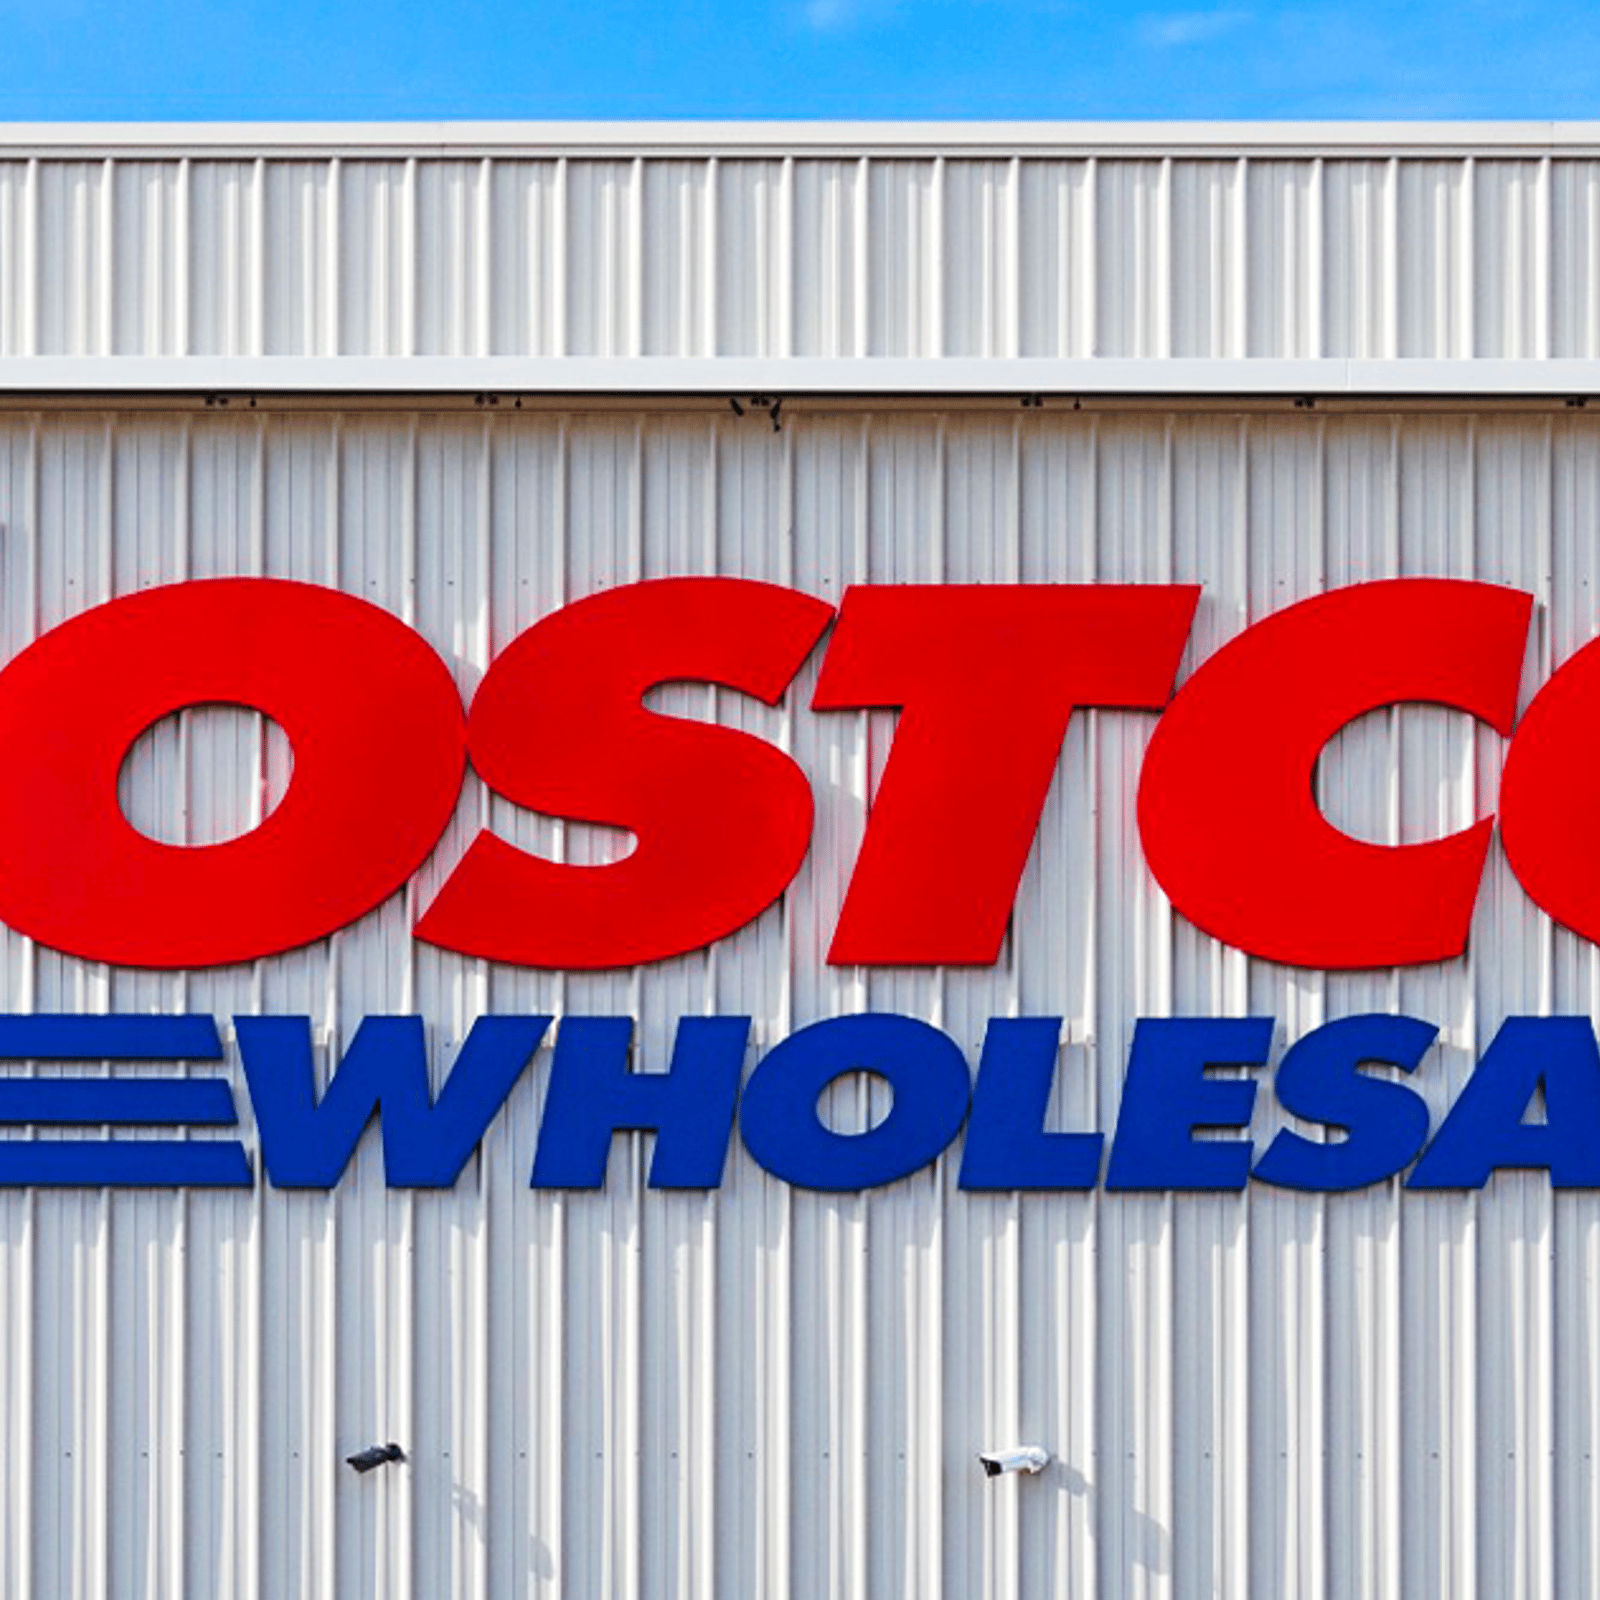 Costco annonce l'arrivée d'un alléchant nouveau produit mais son prix choque les internautes